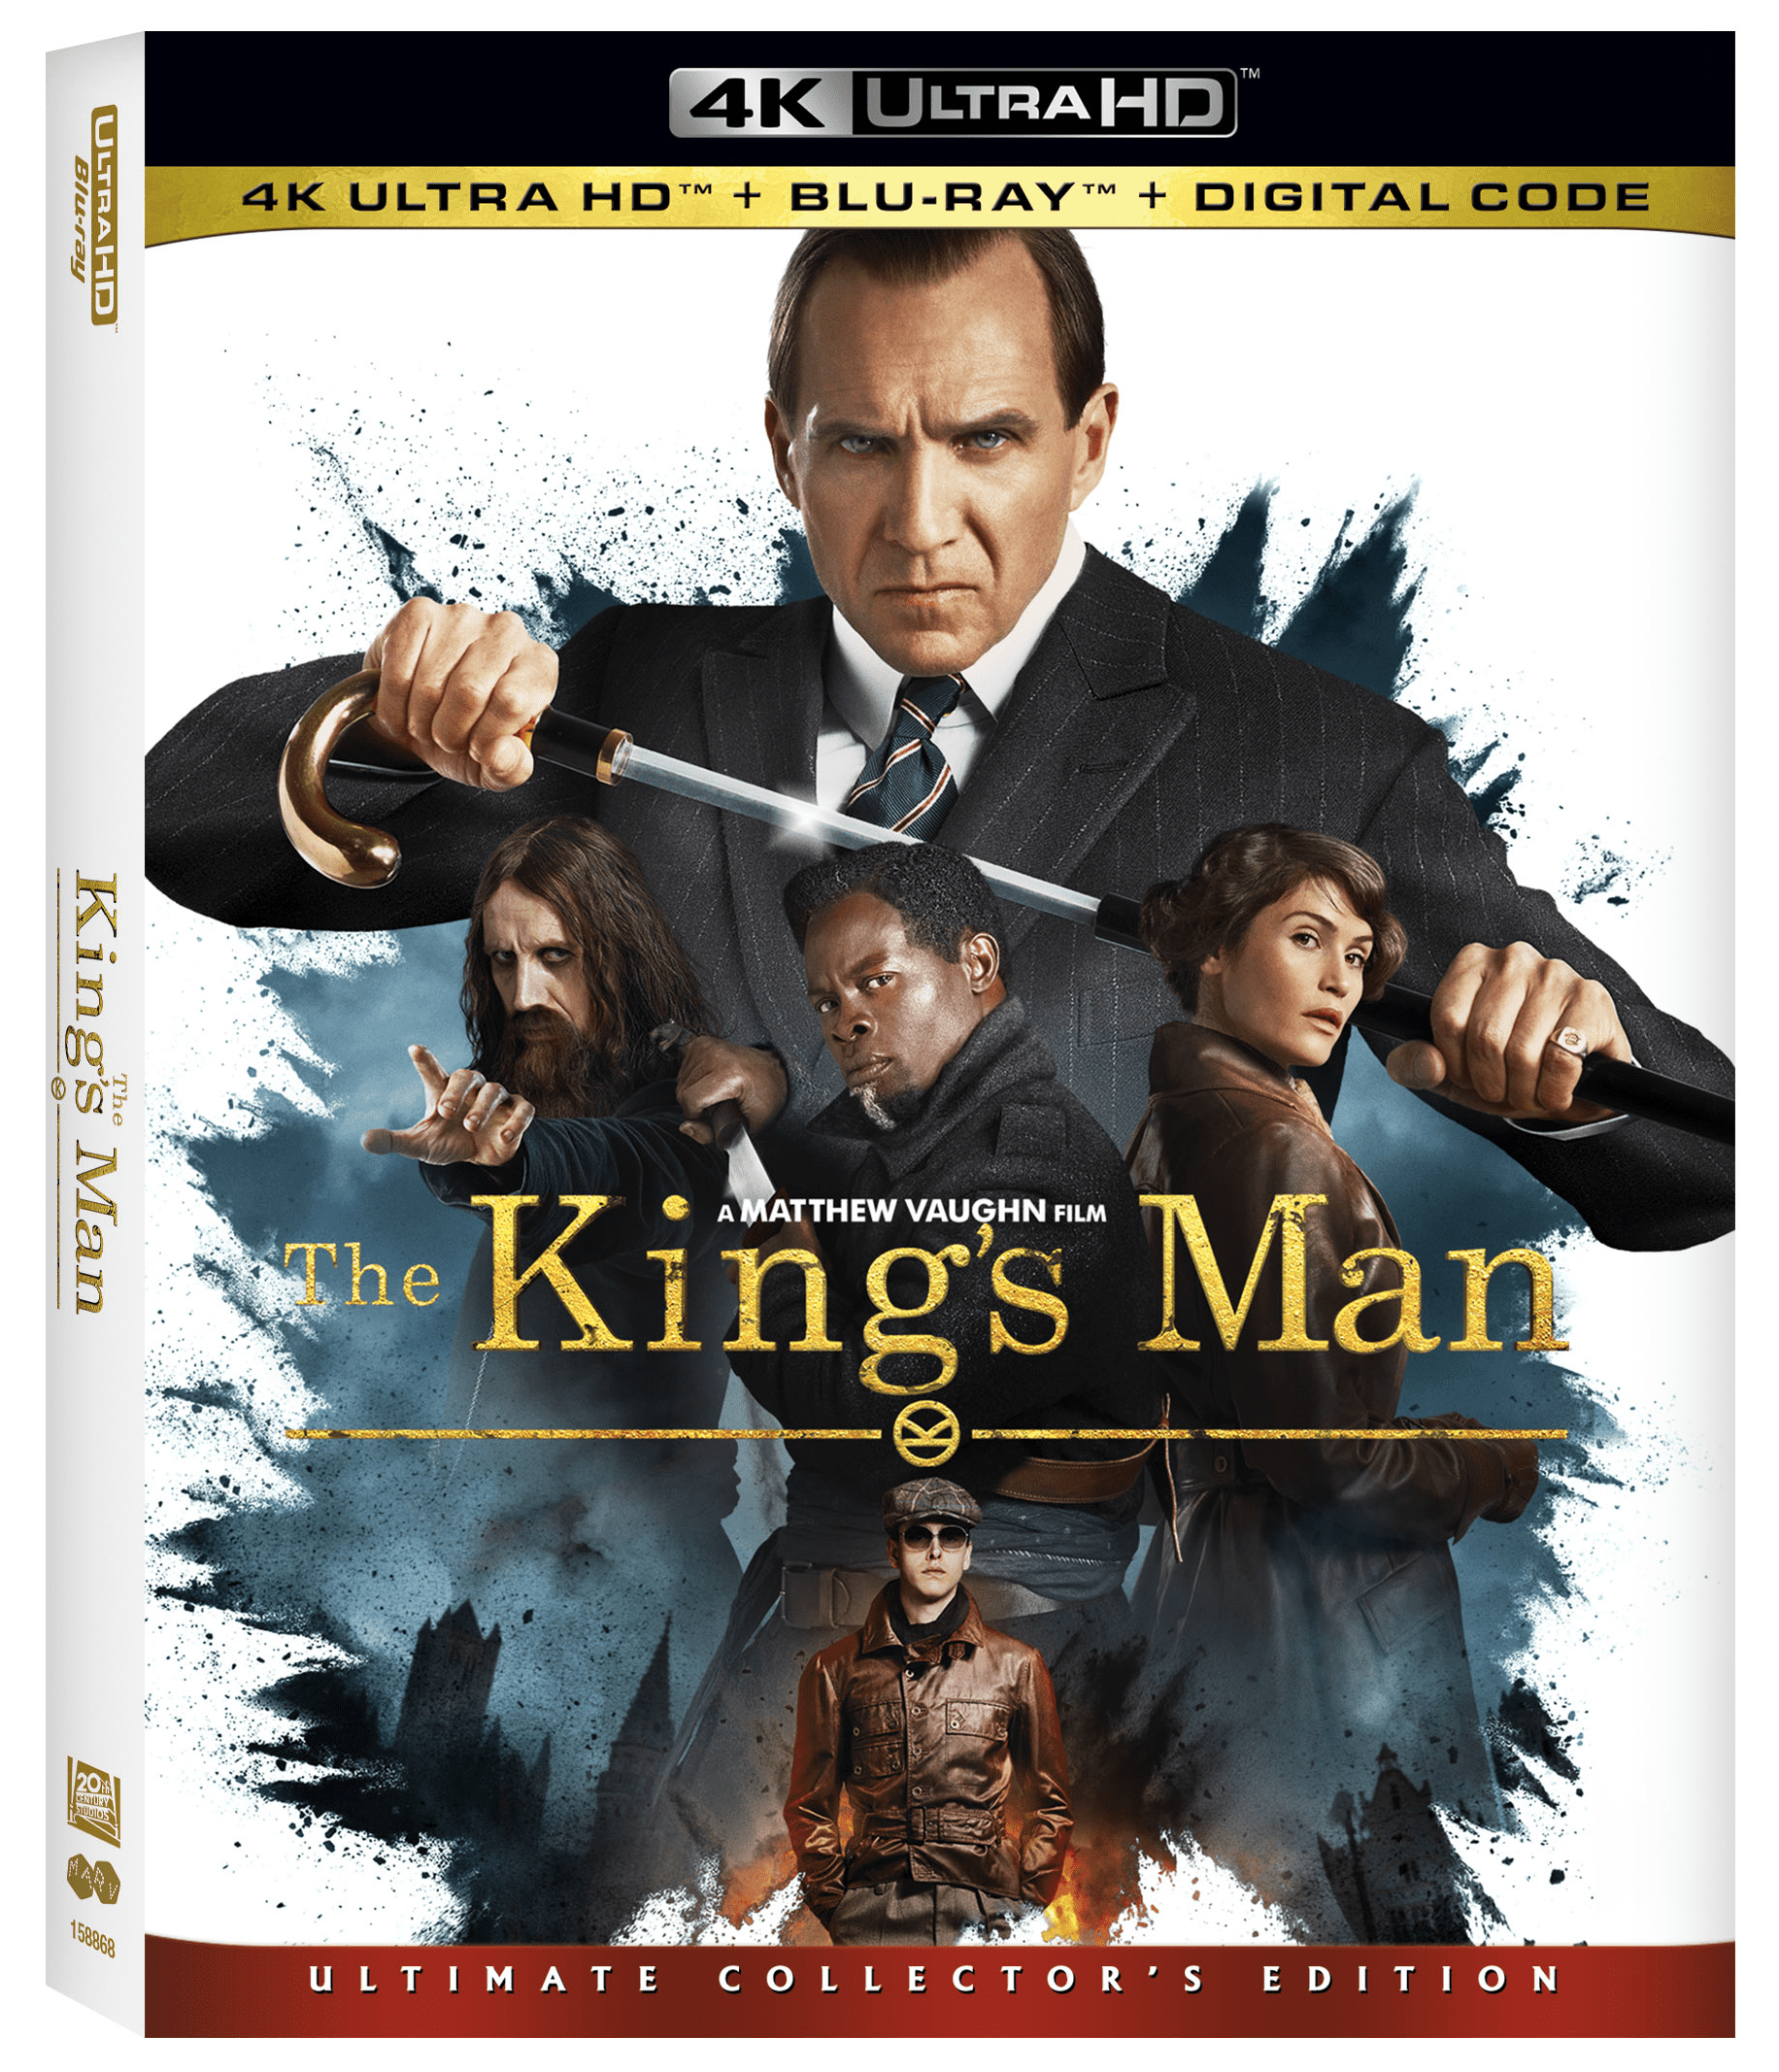 The Kingsman Collection Blu-ray set